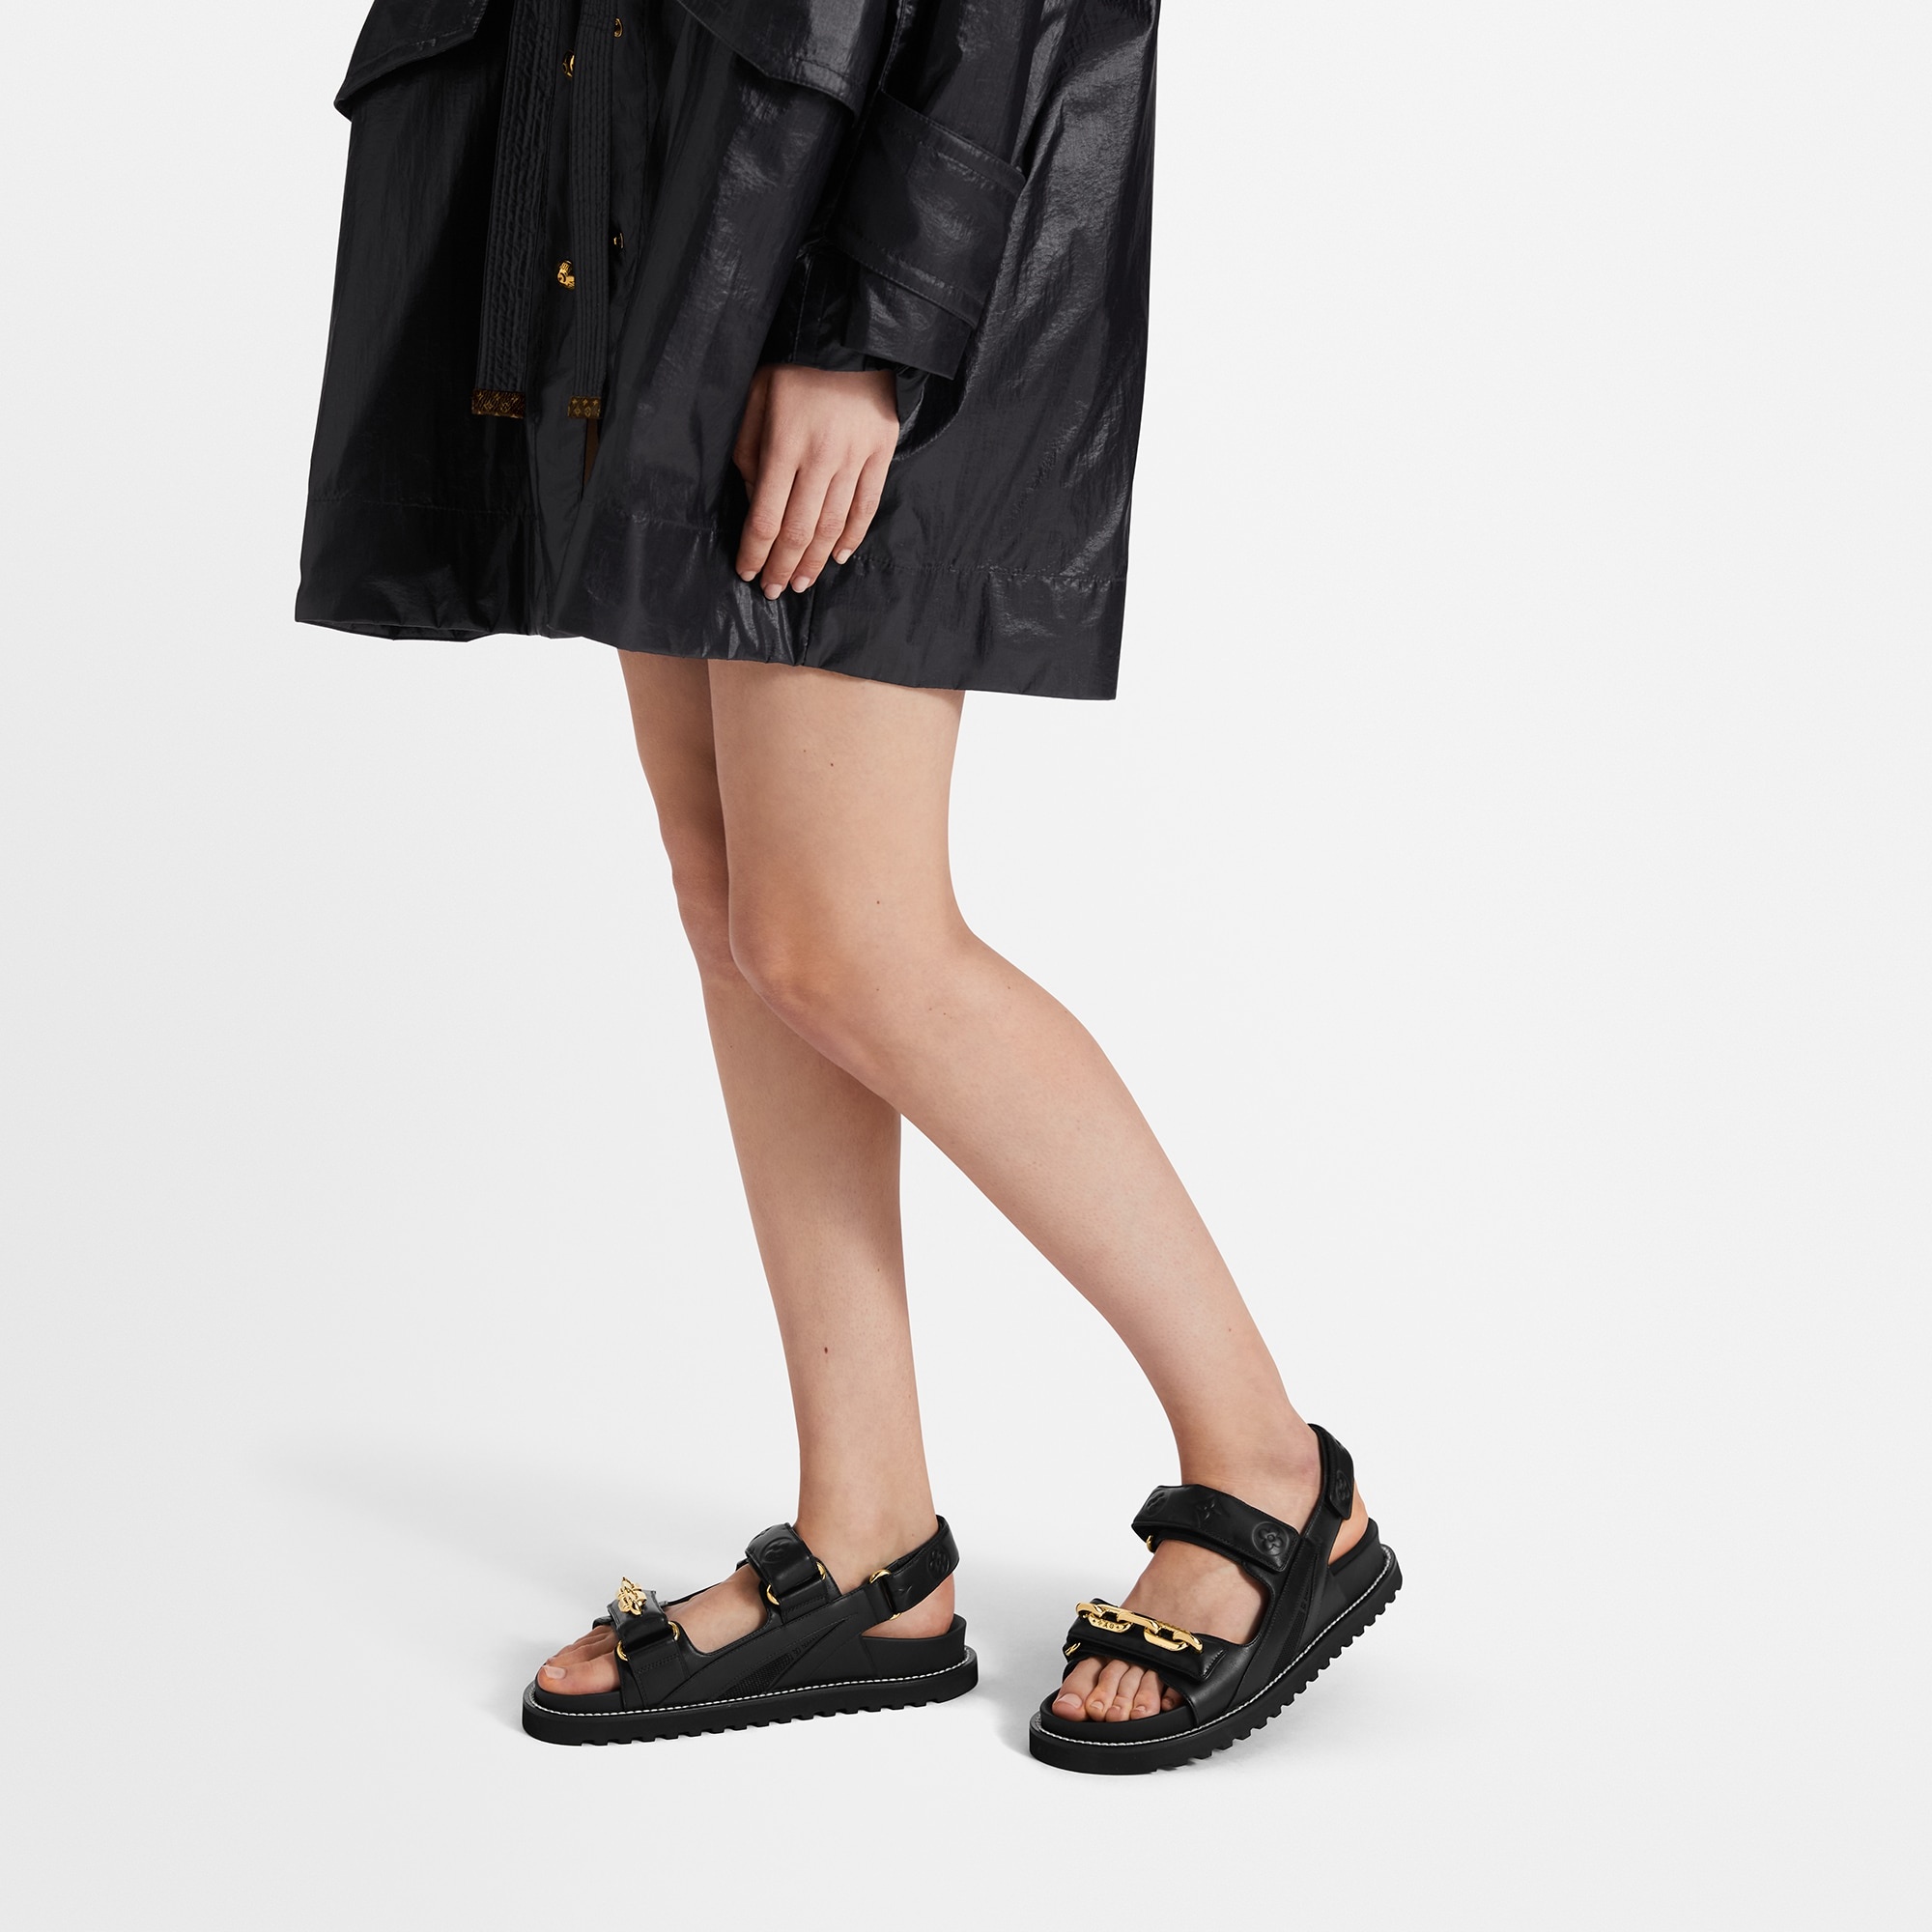 Louis Vuitton Afterglow Platform Ankle Boot, Black, 37.5